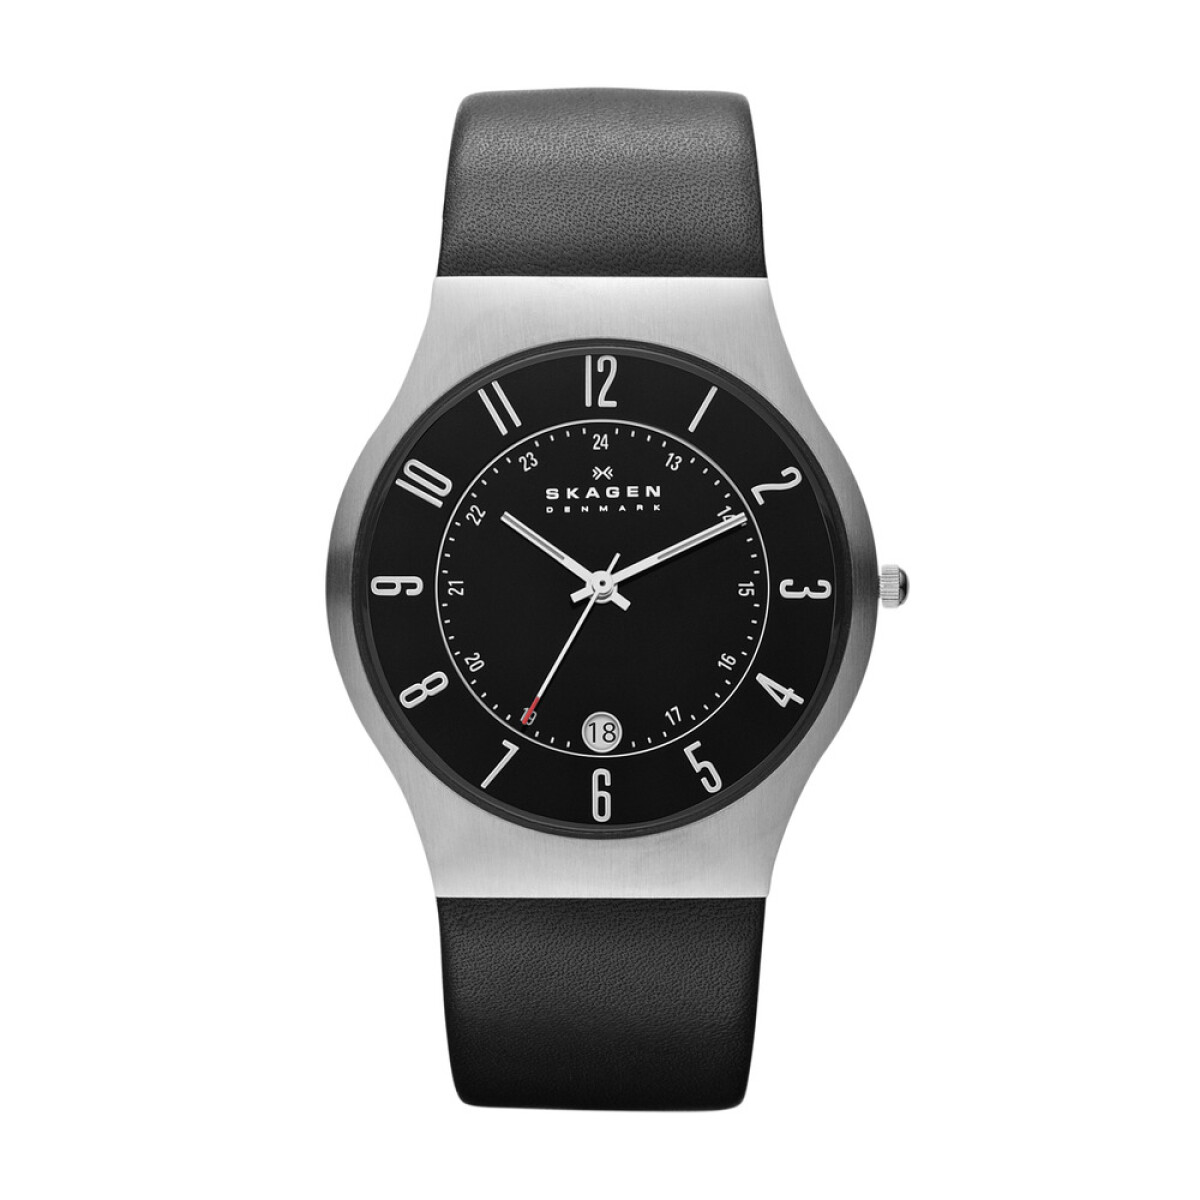 Reloj Skagen Fashion Cuero Negro 